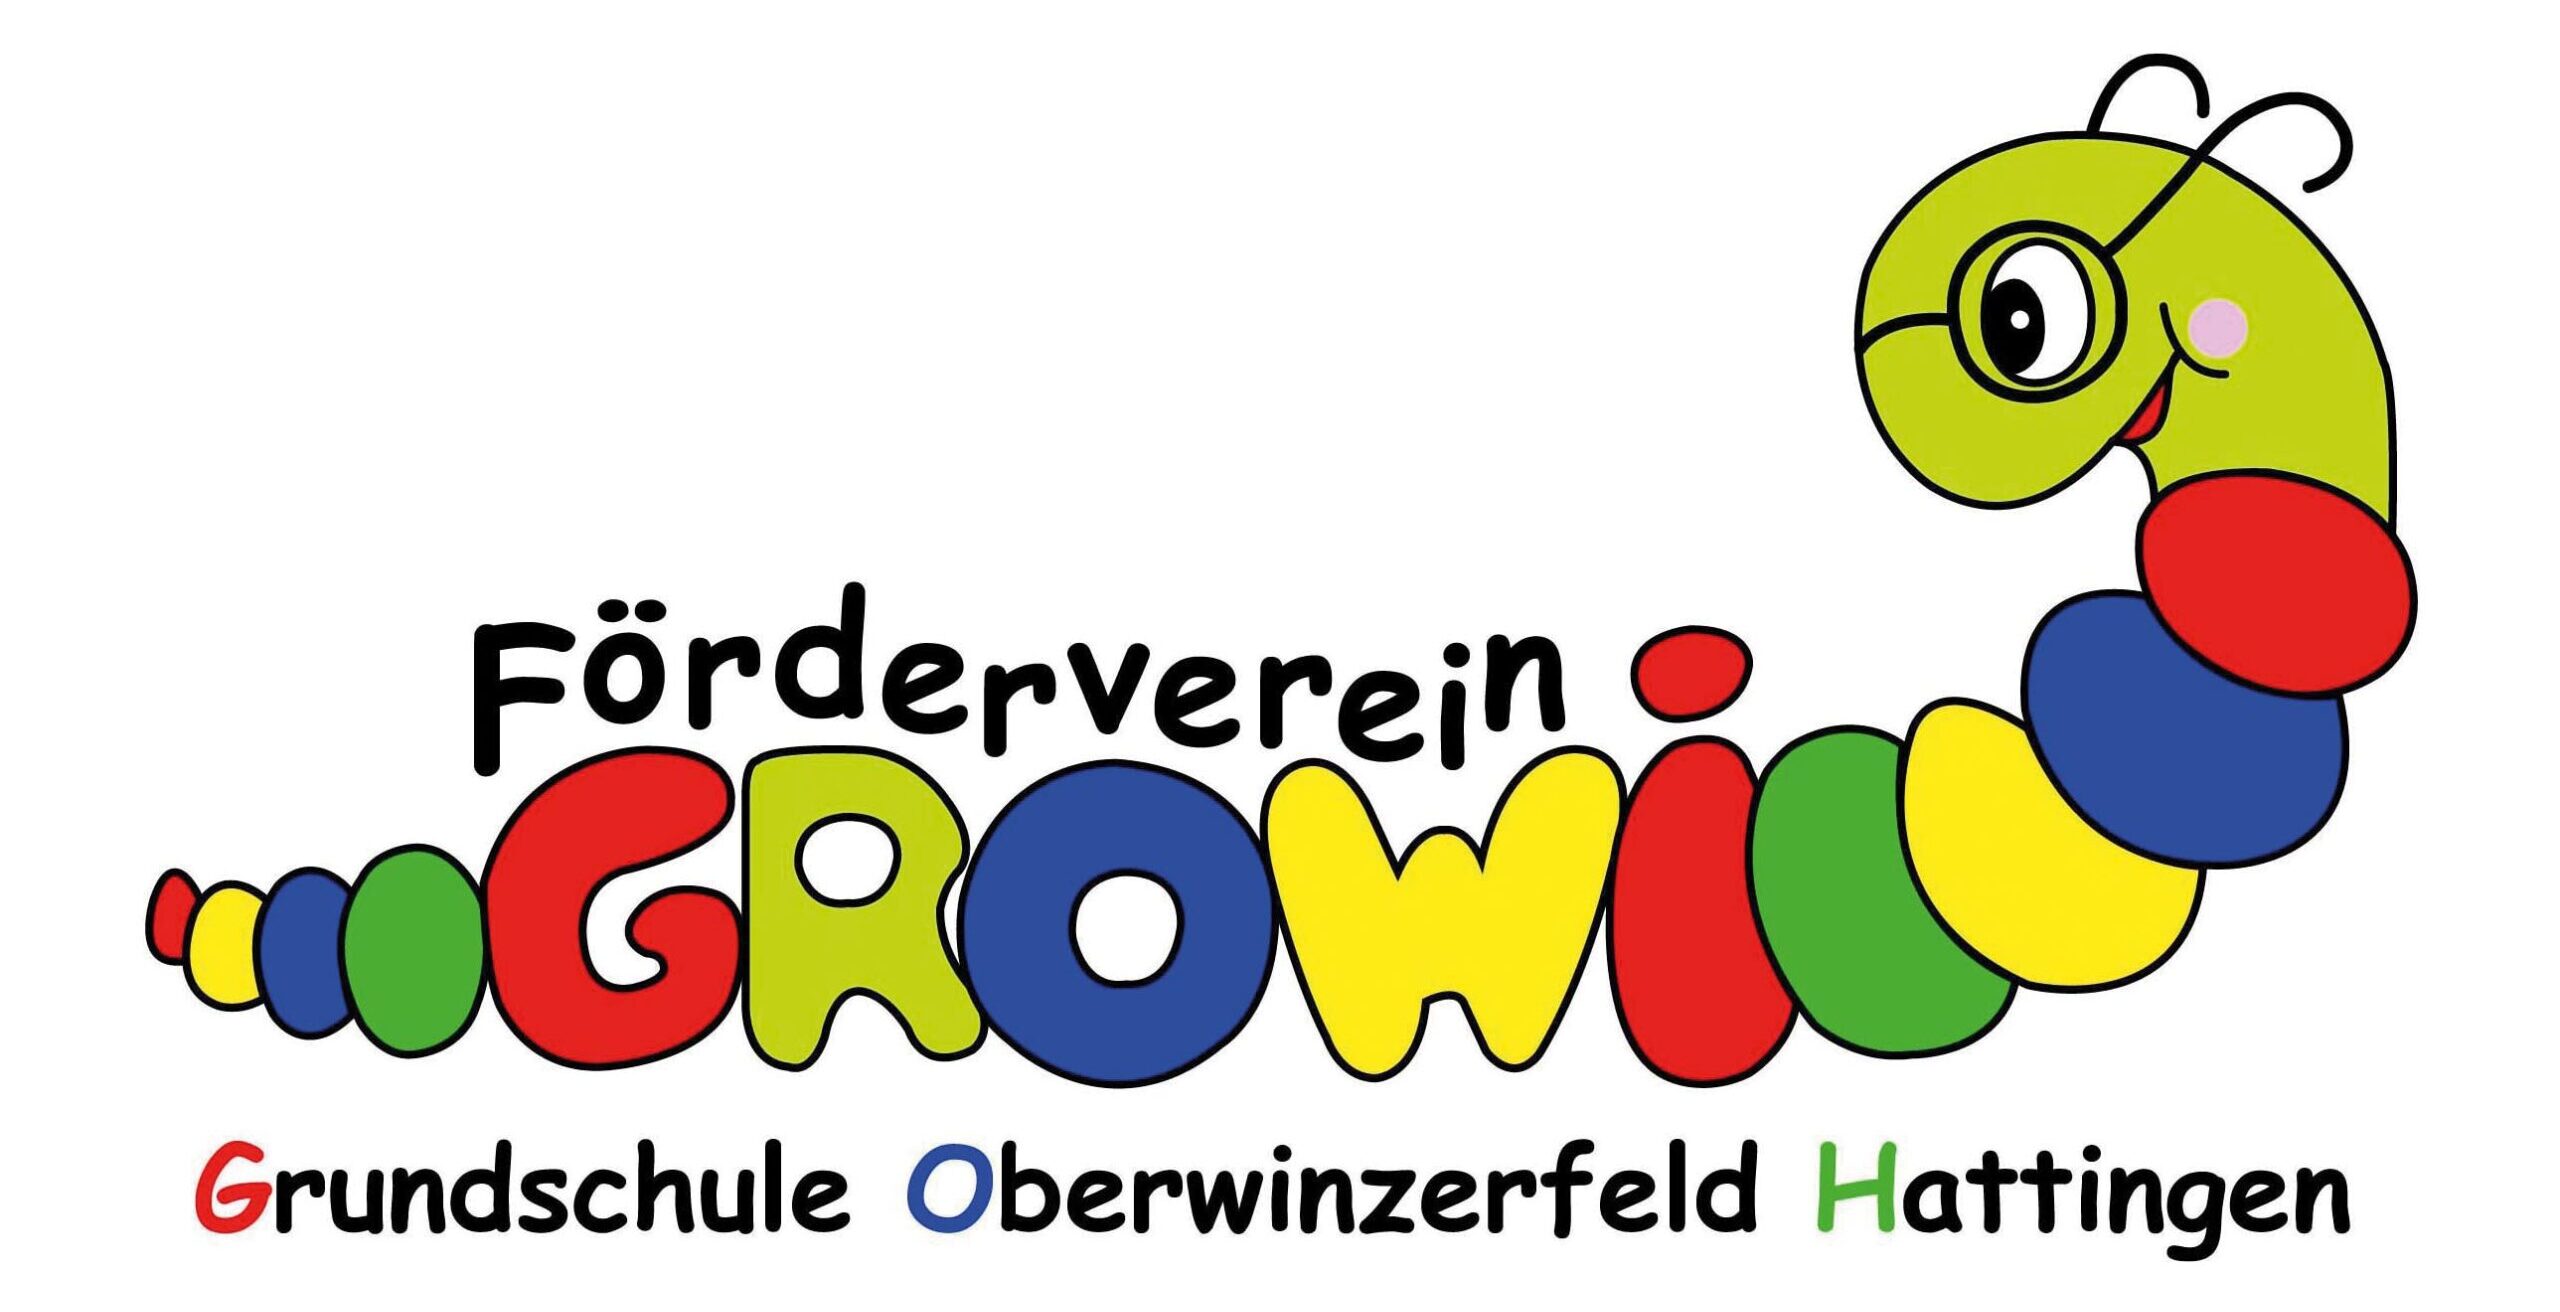 Förderverein Grundschule Oberwinzerfeld